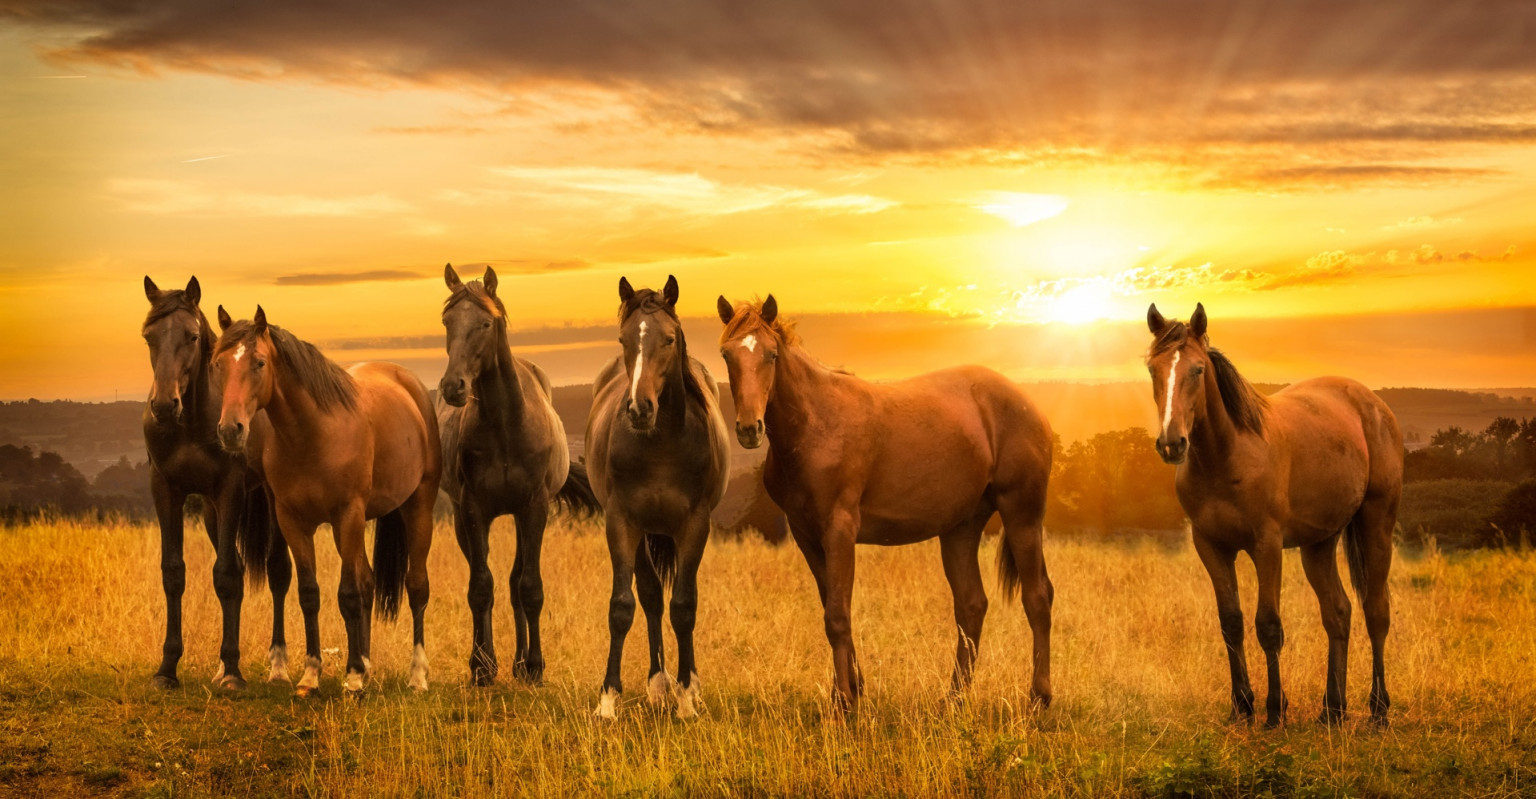 Tổng hợp hình ảnh về những chú ngựa đẹp nhất  - [Kích thước hình ảnh: 1536x799 px]